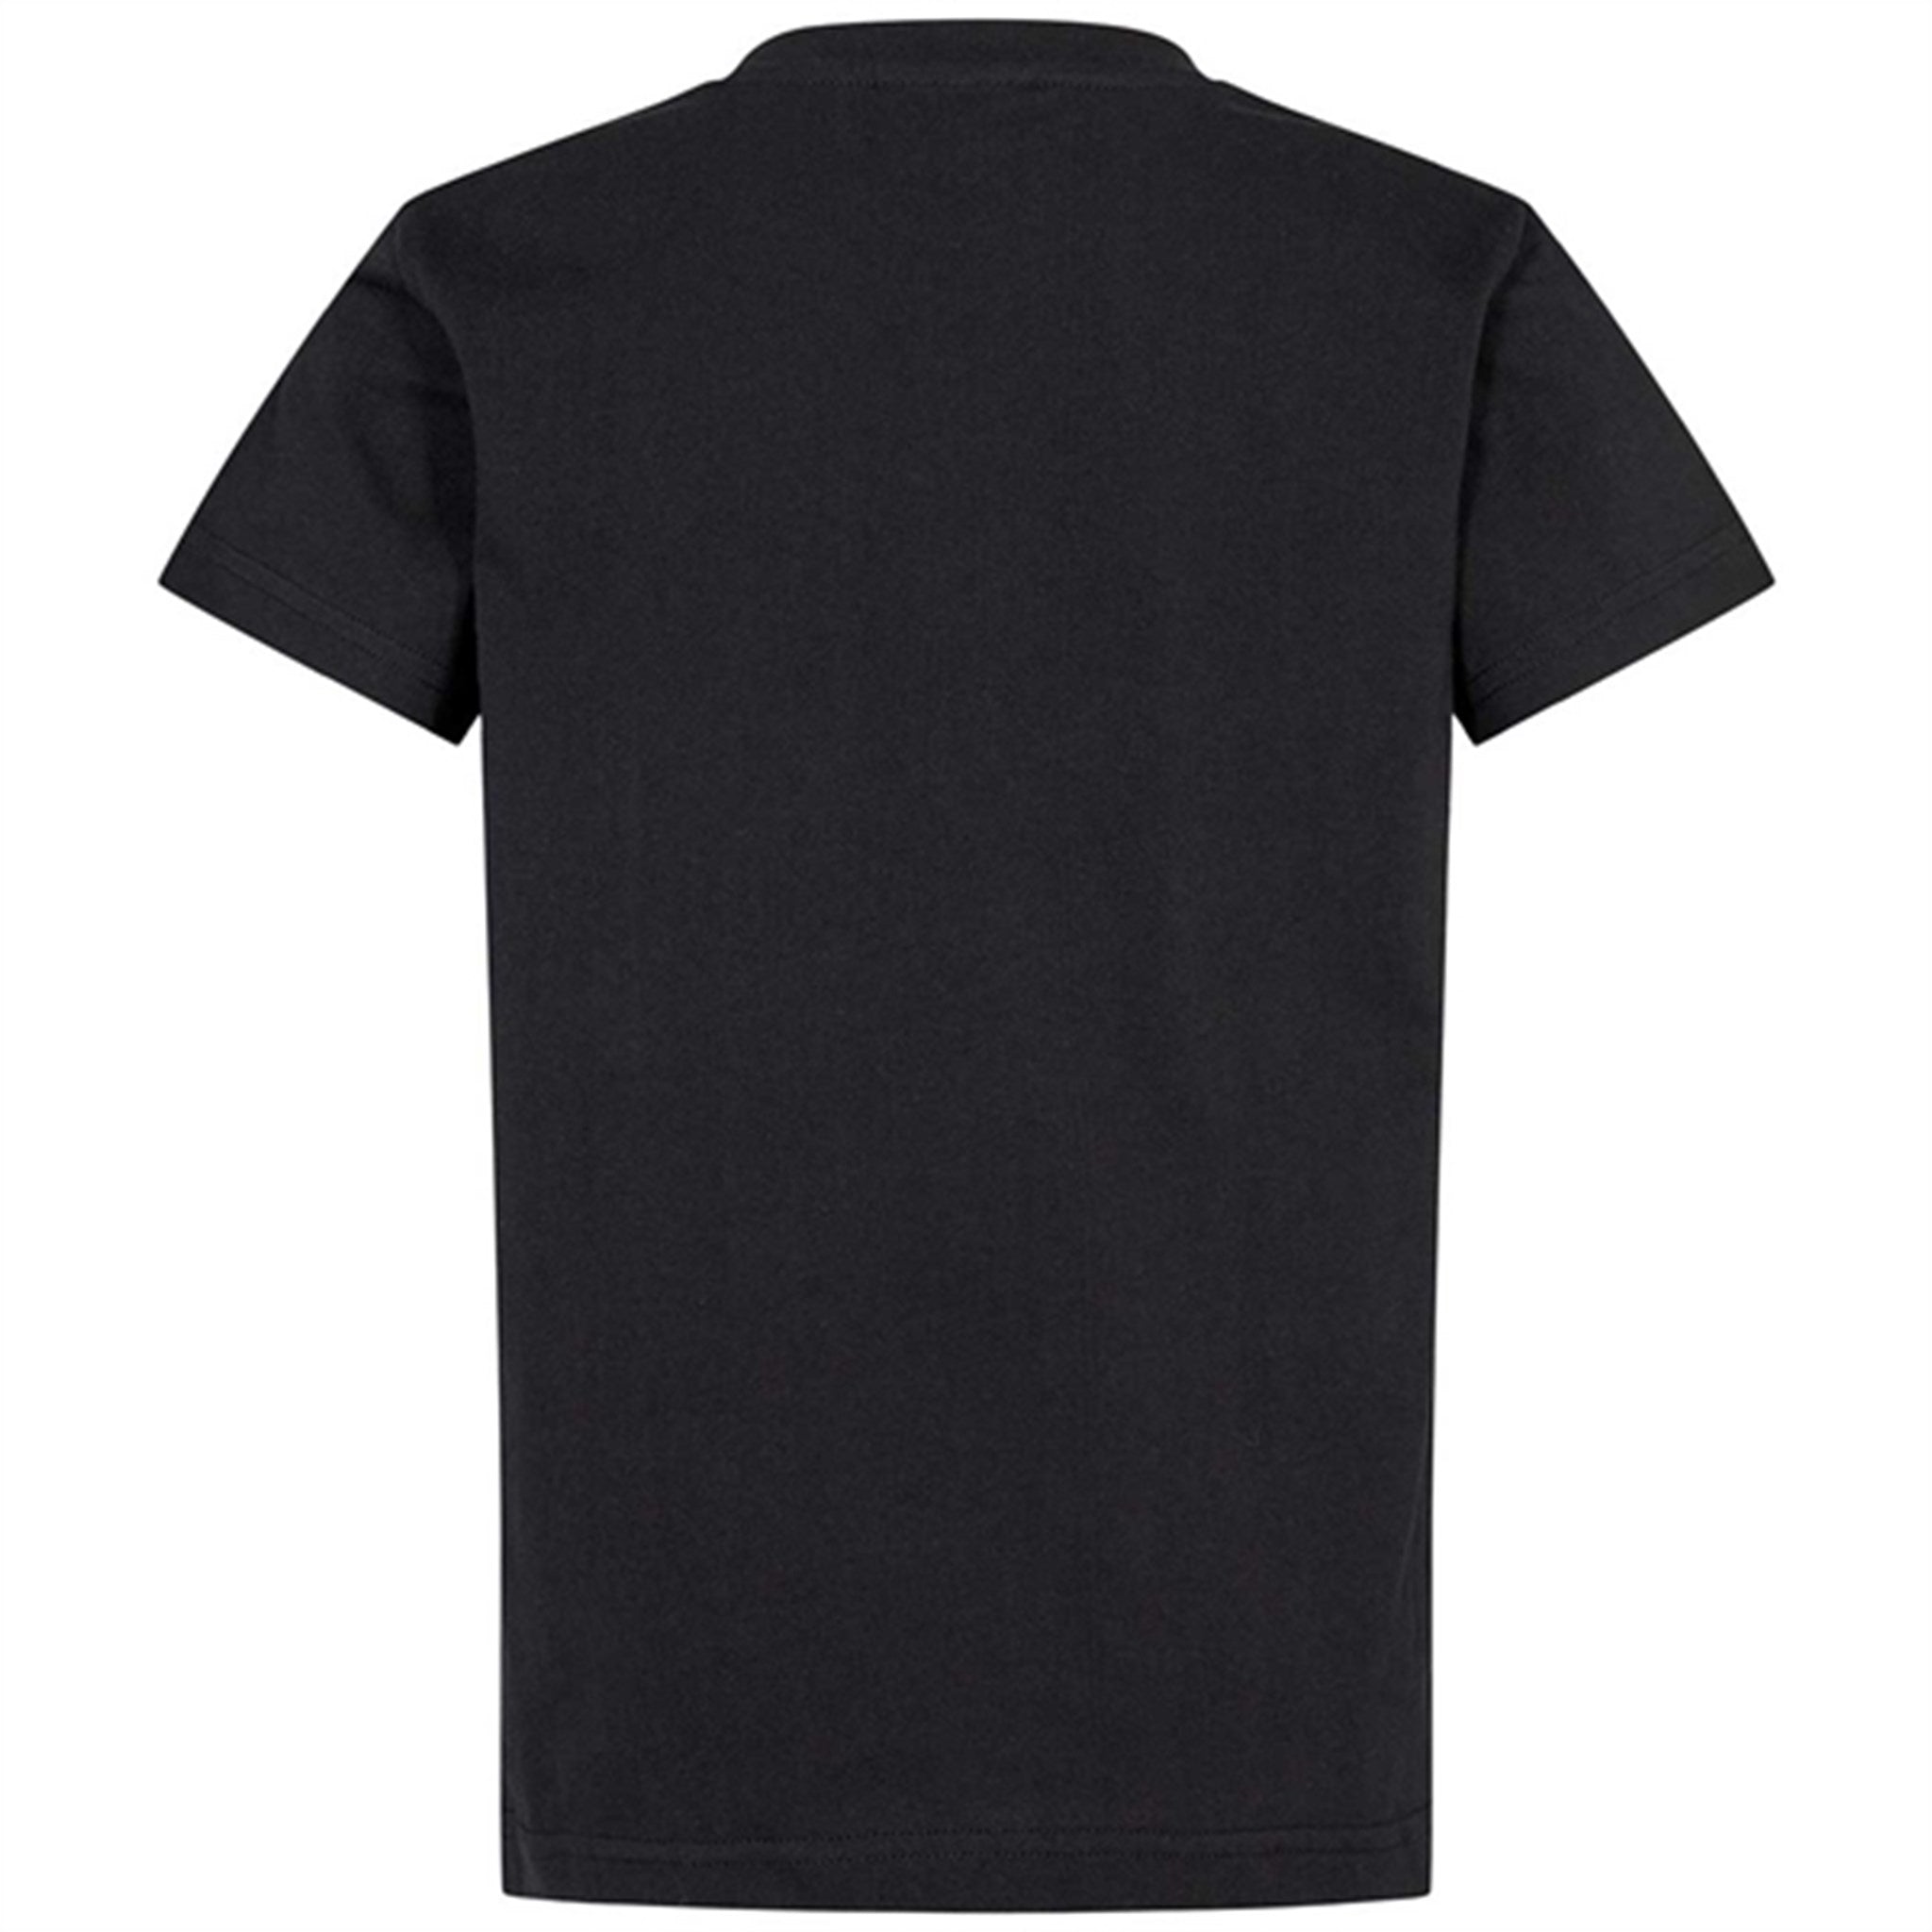 Sofie Schnoor Black T-shirt 2